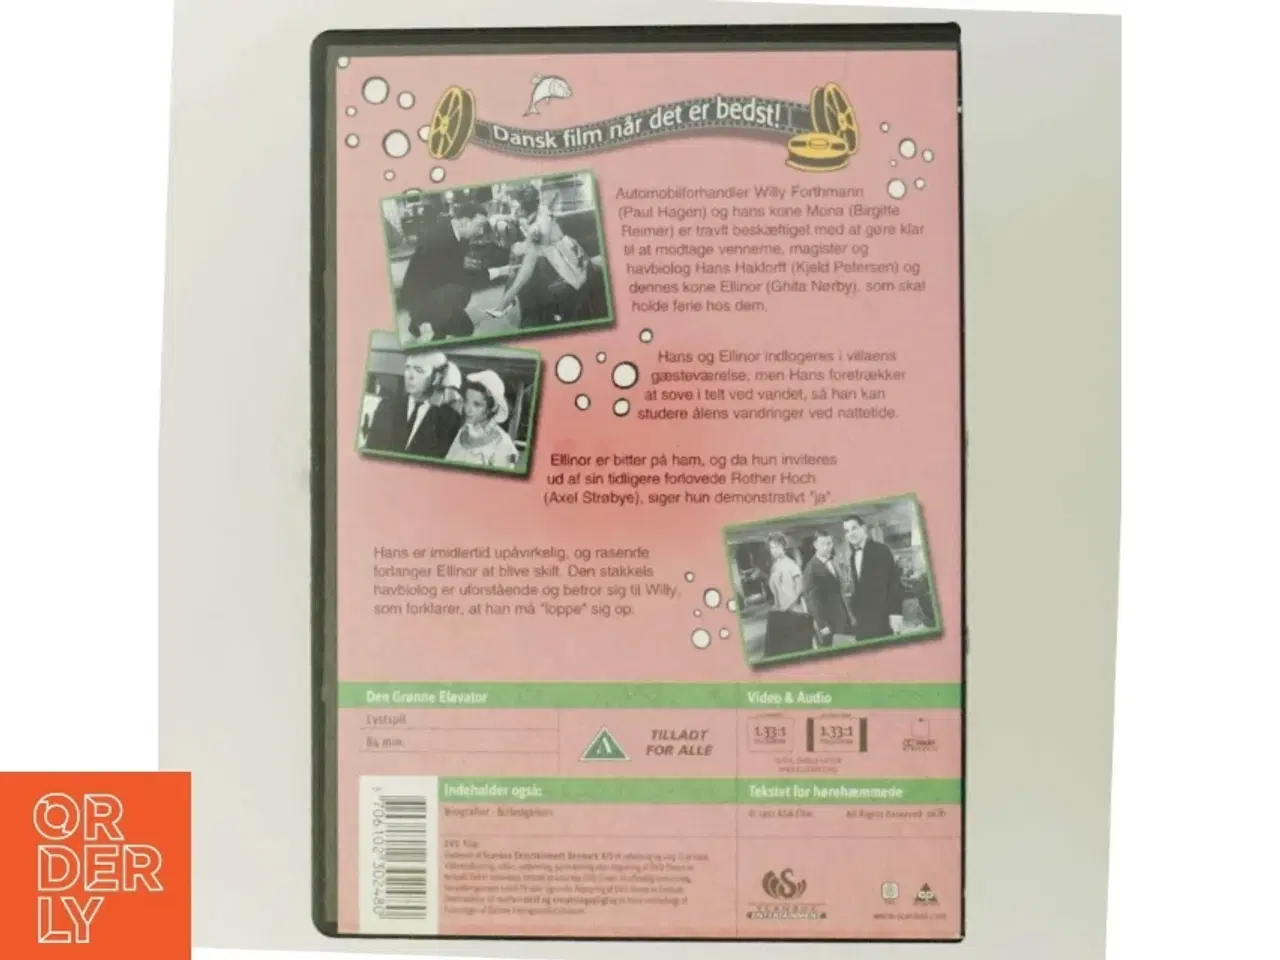 Billede 3 - Den Grønne Elevator DVD fra Scanbox